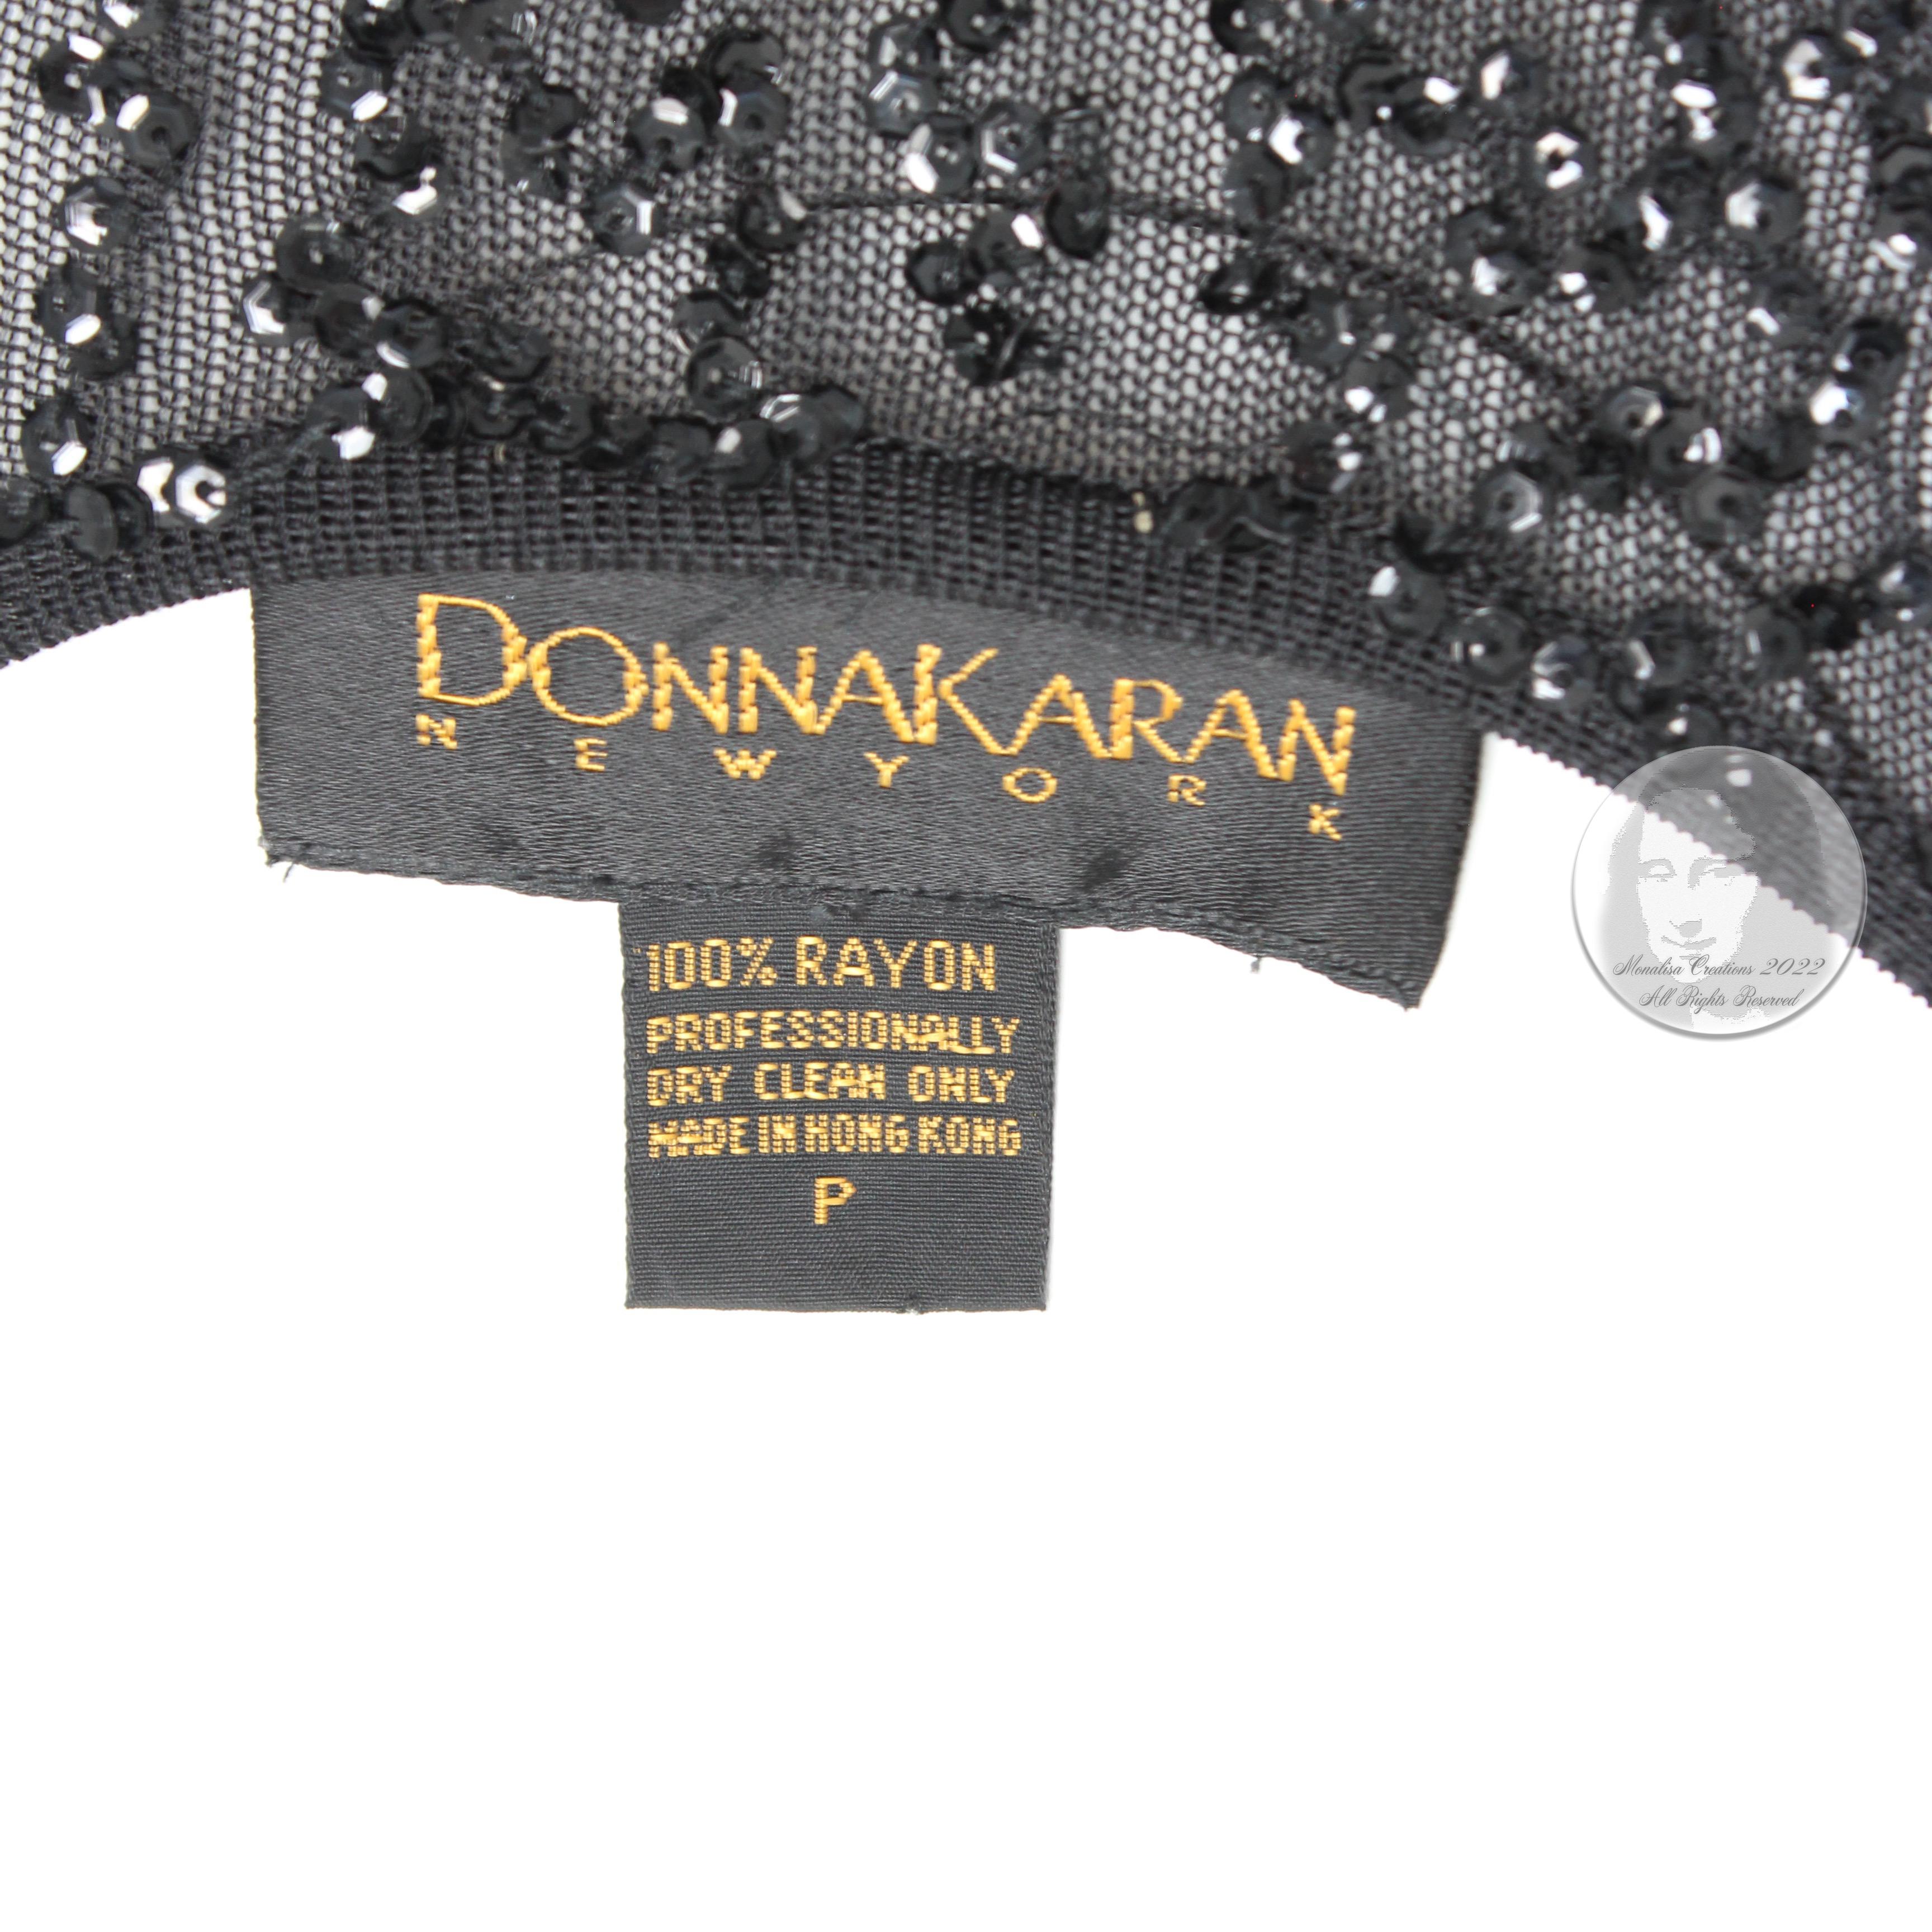 Donna Karan New York 'Naked' Dress Black Sheer Knit Sequins 90s Vintage Size P 2